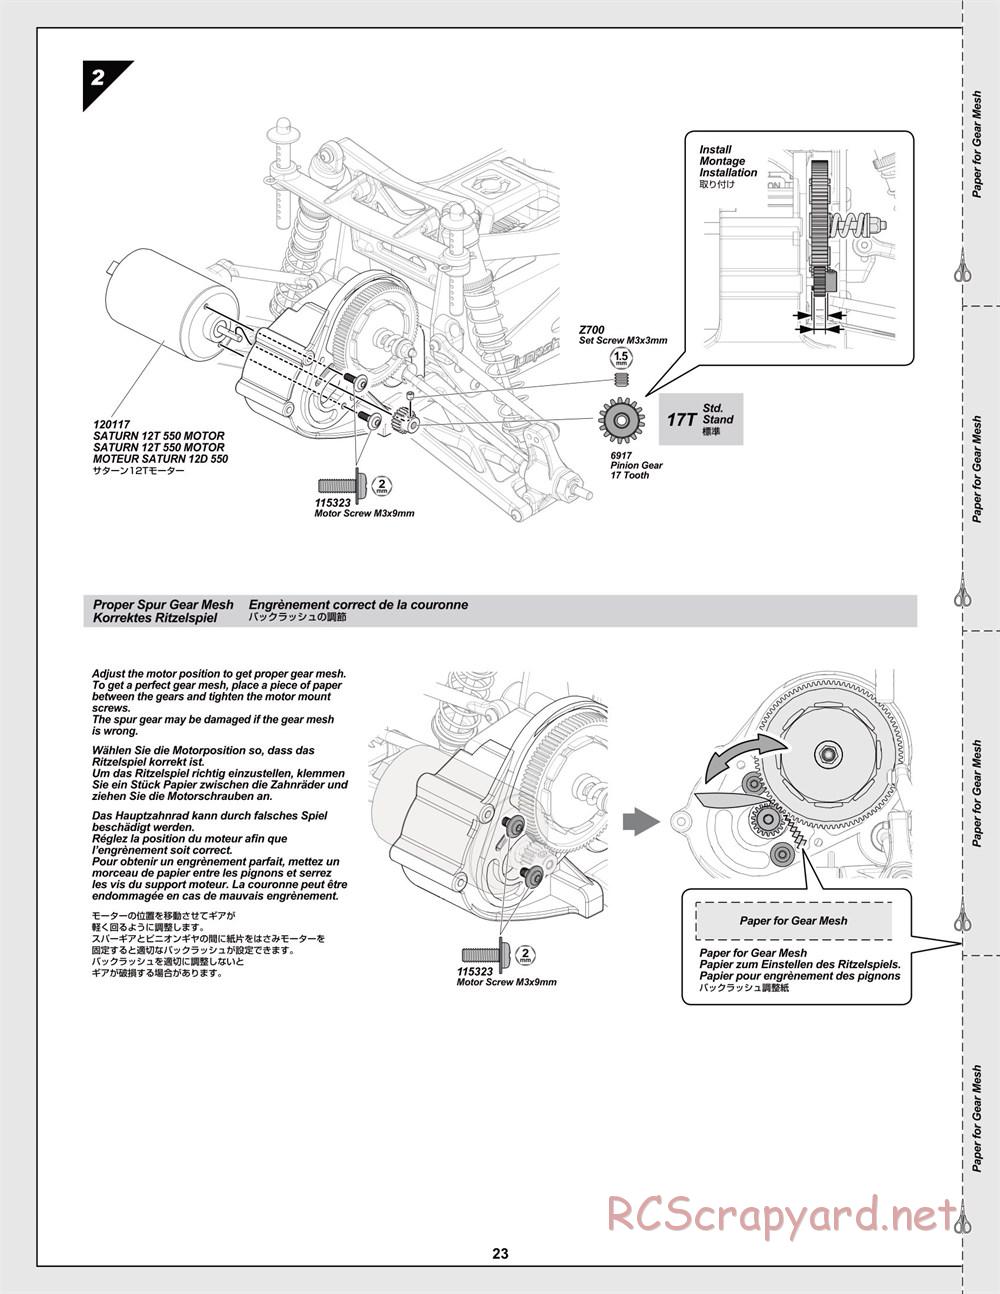 HPI - Jumpshot MT V2 - Manual - Page 23